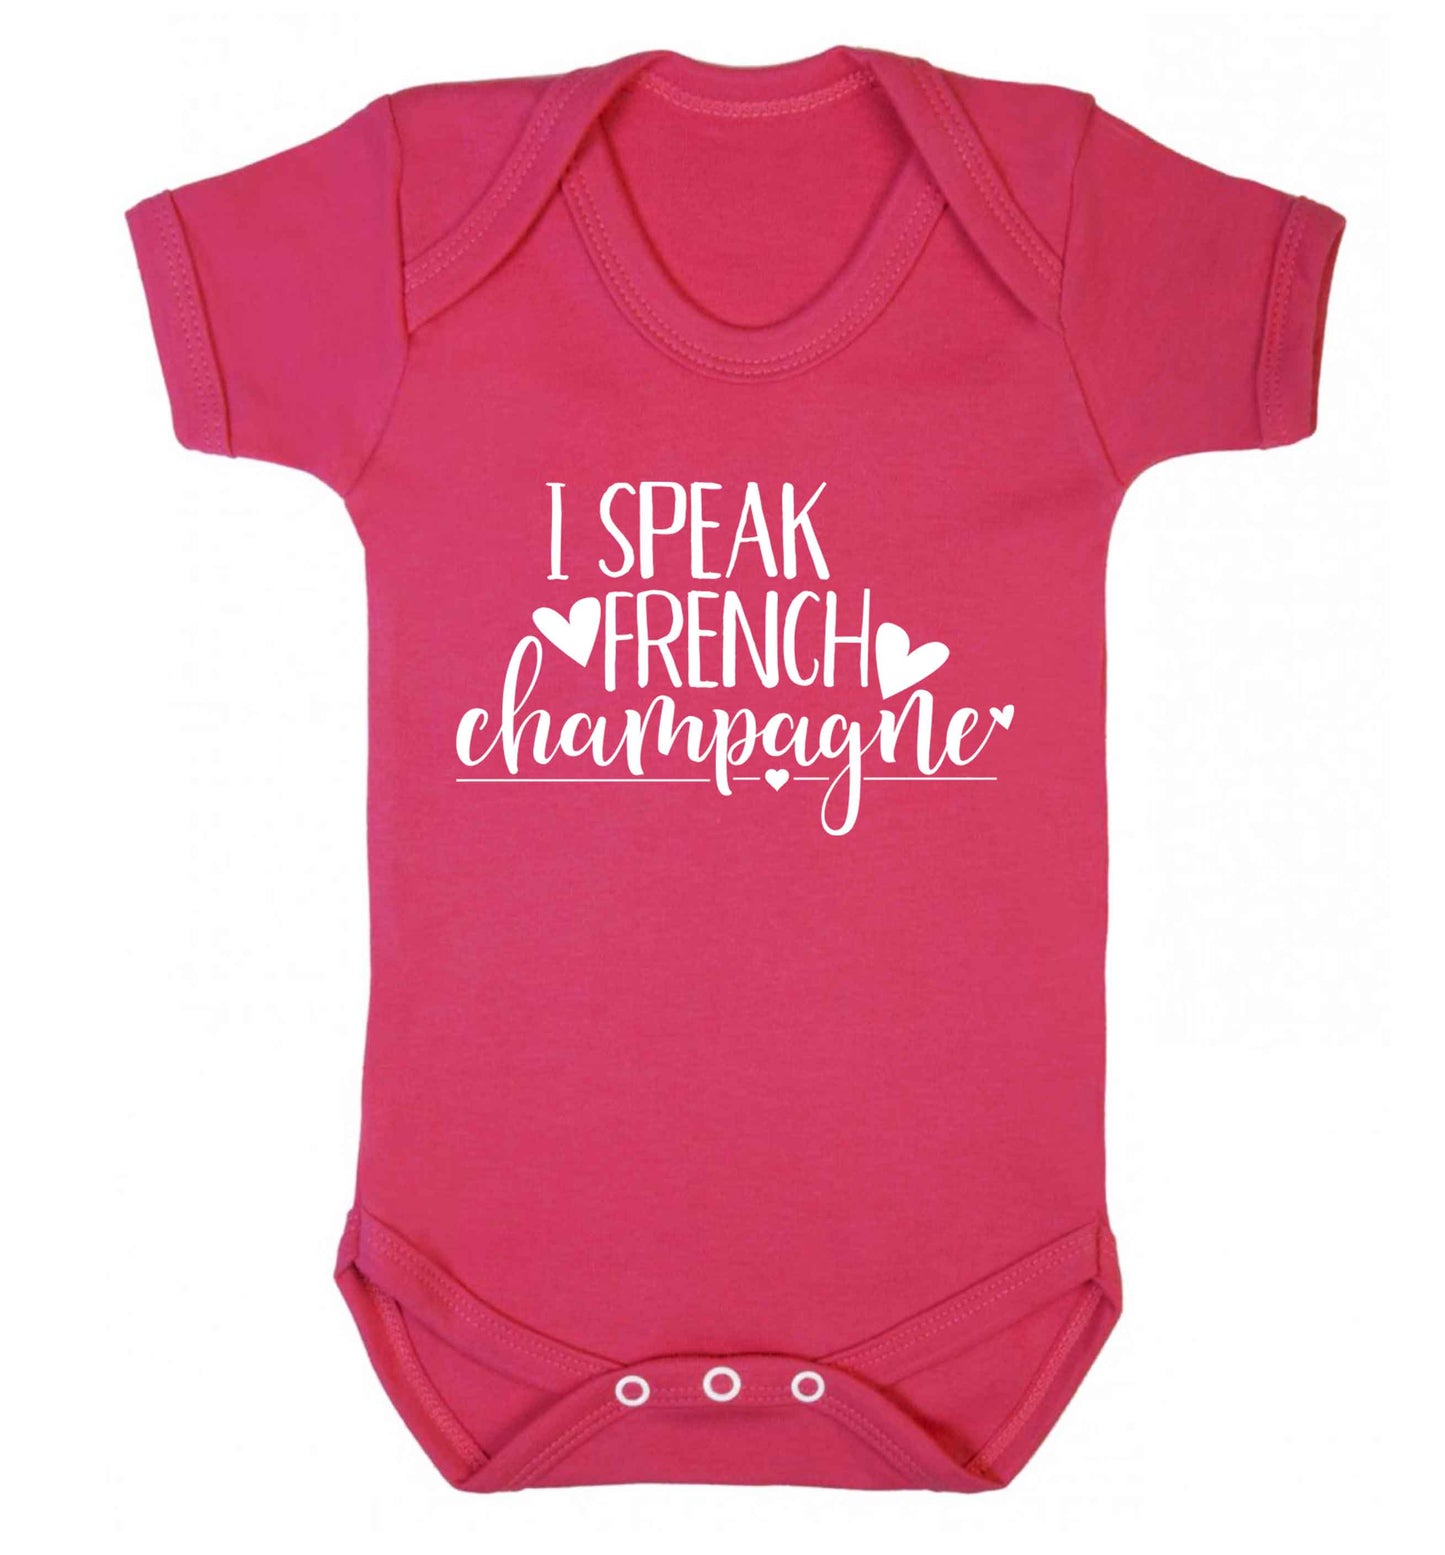 I speak french champagne Baby Vest dark pink 18-24 months